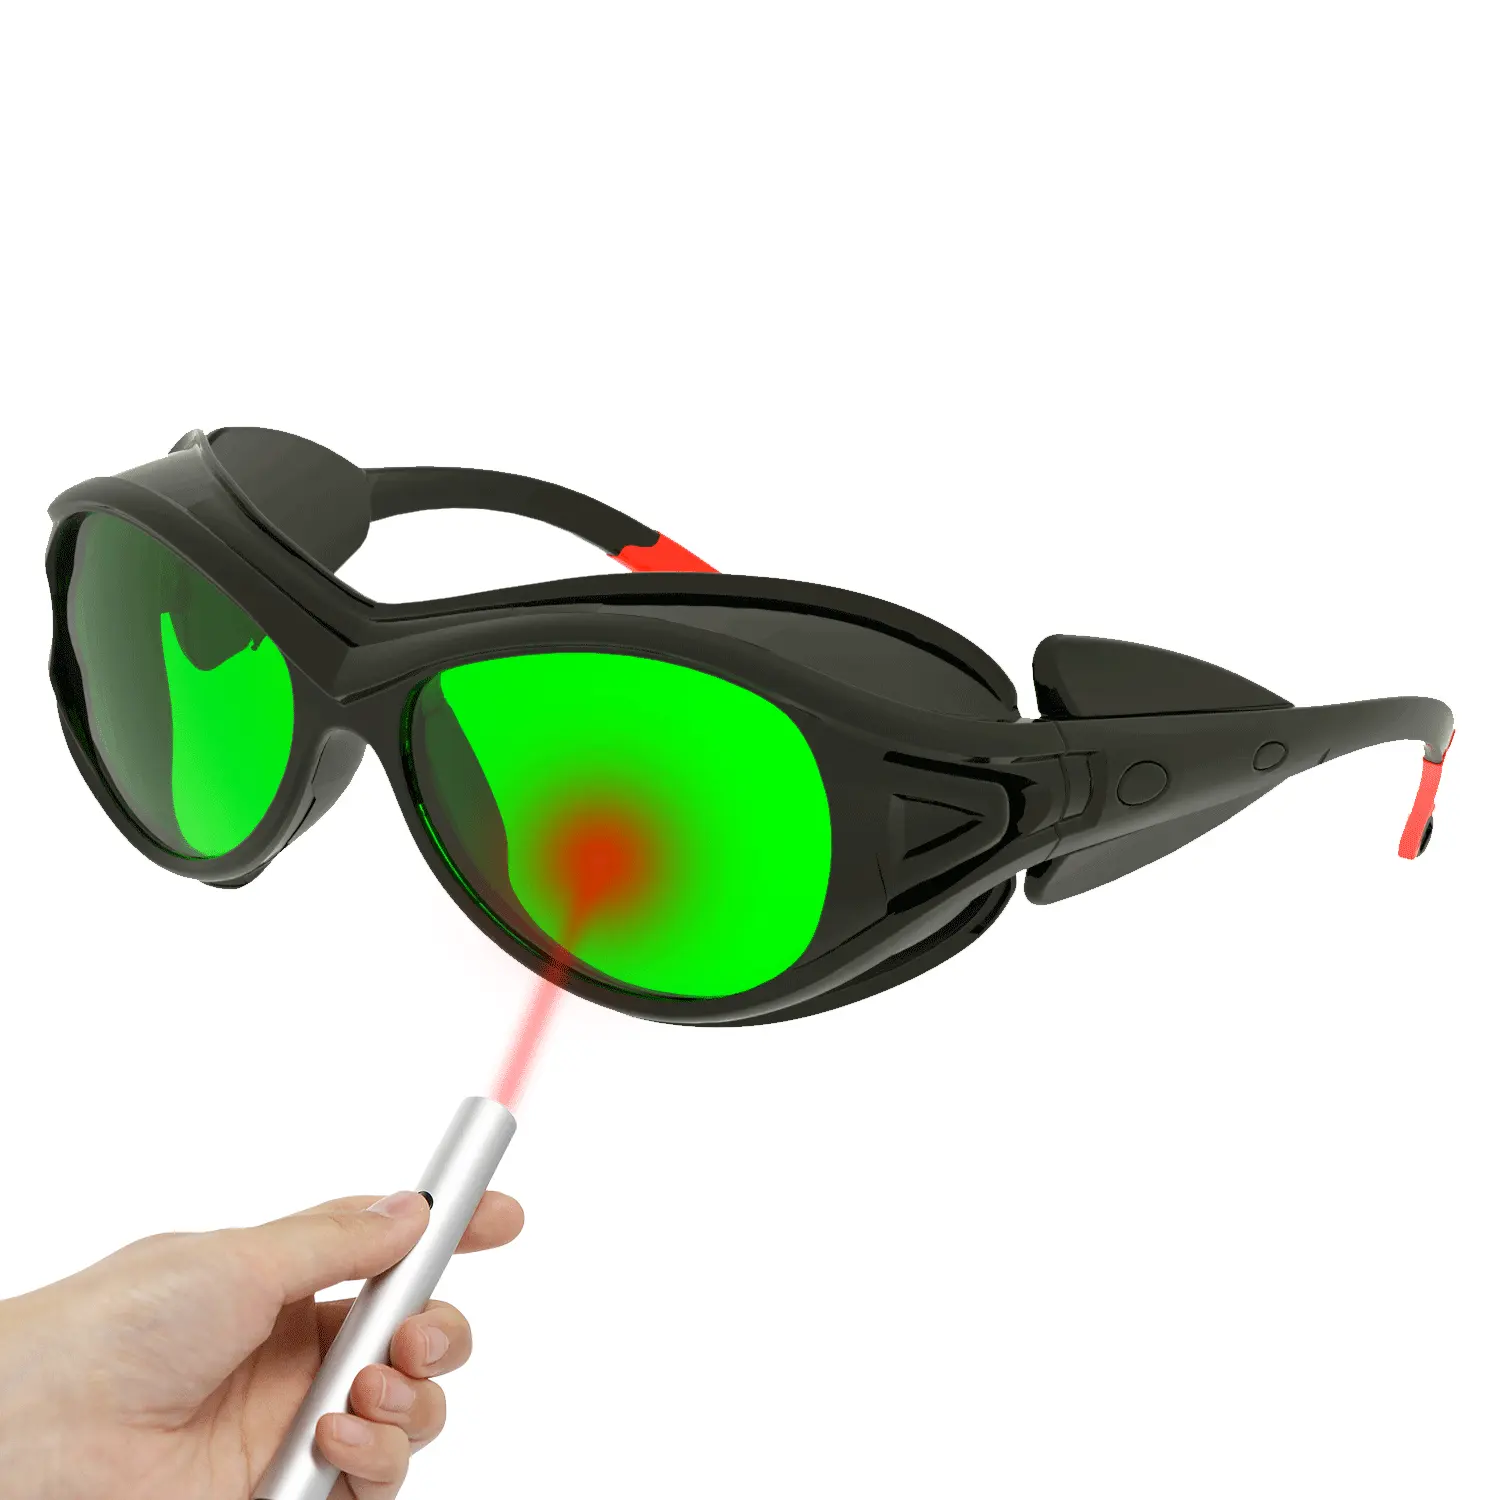 แว่นตาป้องกันงานเชื่อมพลาสติกสีฟ้าเขียวแว่นตาป้องกันเลเซอร์แบบ unioptics 808nm OD7 OD5